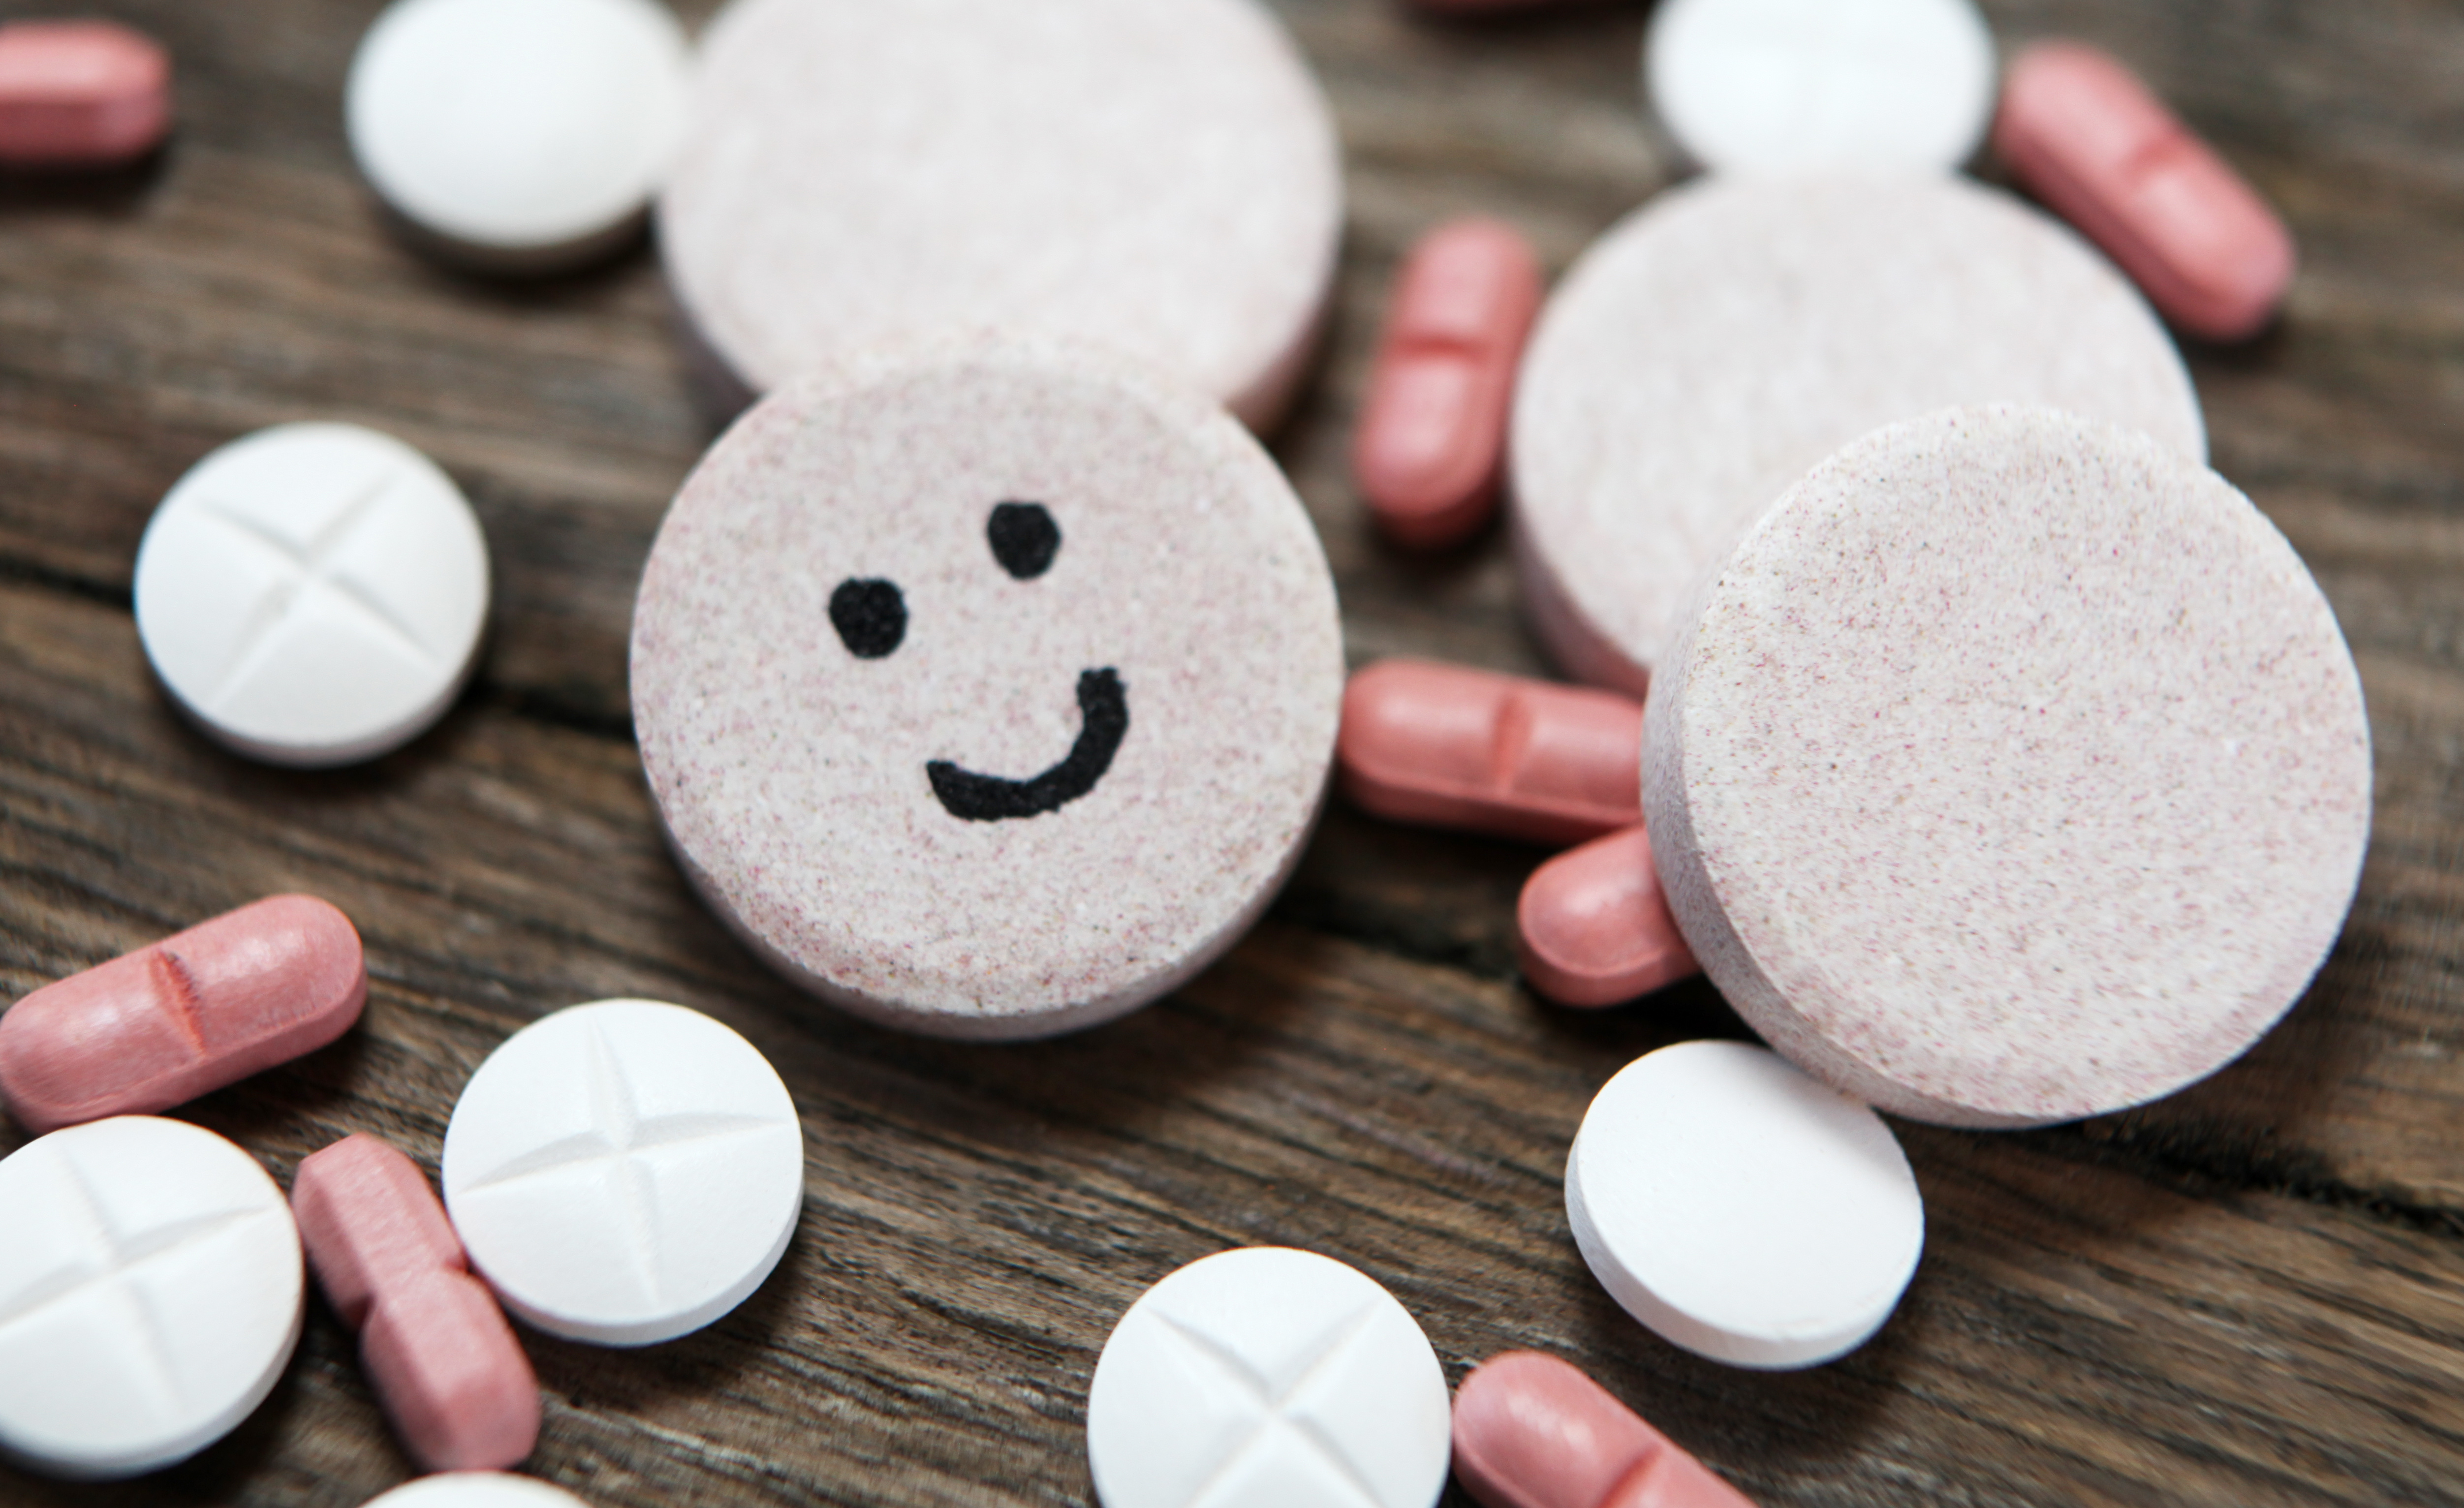 Notre microbiote jouerait-il un rôle dans l'efficacité des traitements antidépresseurs ? © auryndriskon, Adobe Stock